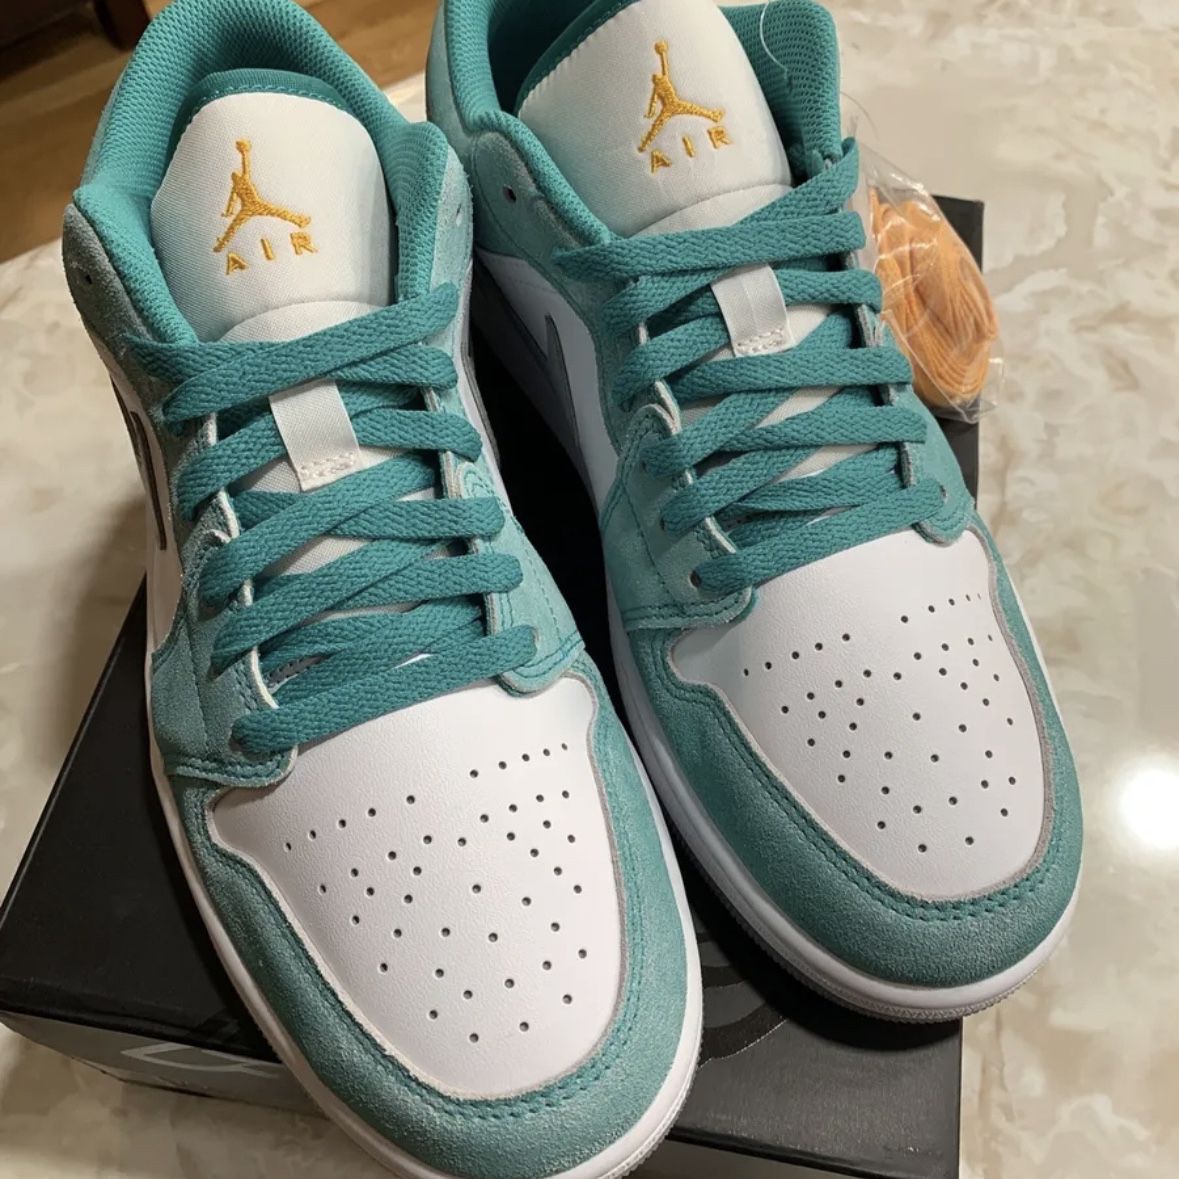 🔥Nike Air Jordan 1 AJ1 Retro Low SE Emerald Green DN3705-301 Men’s Shoes Size 8.5 NWB ✅